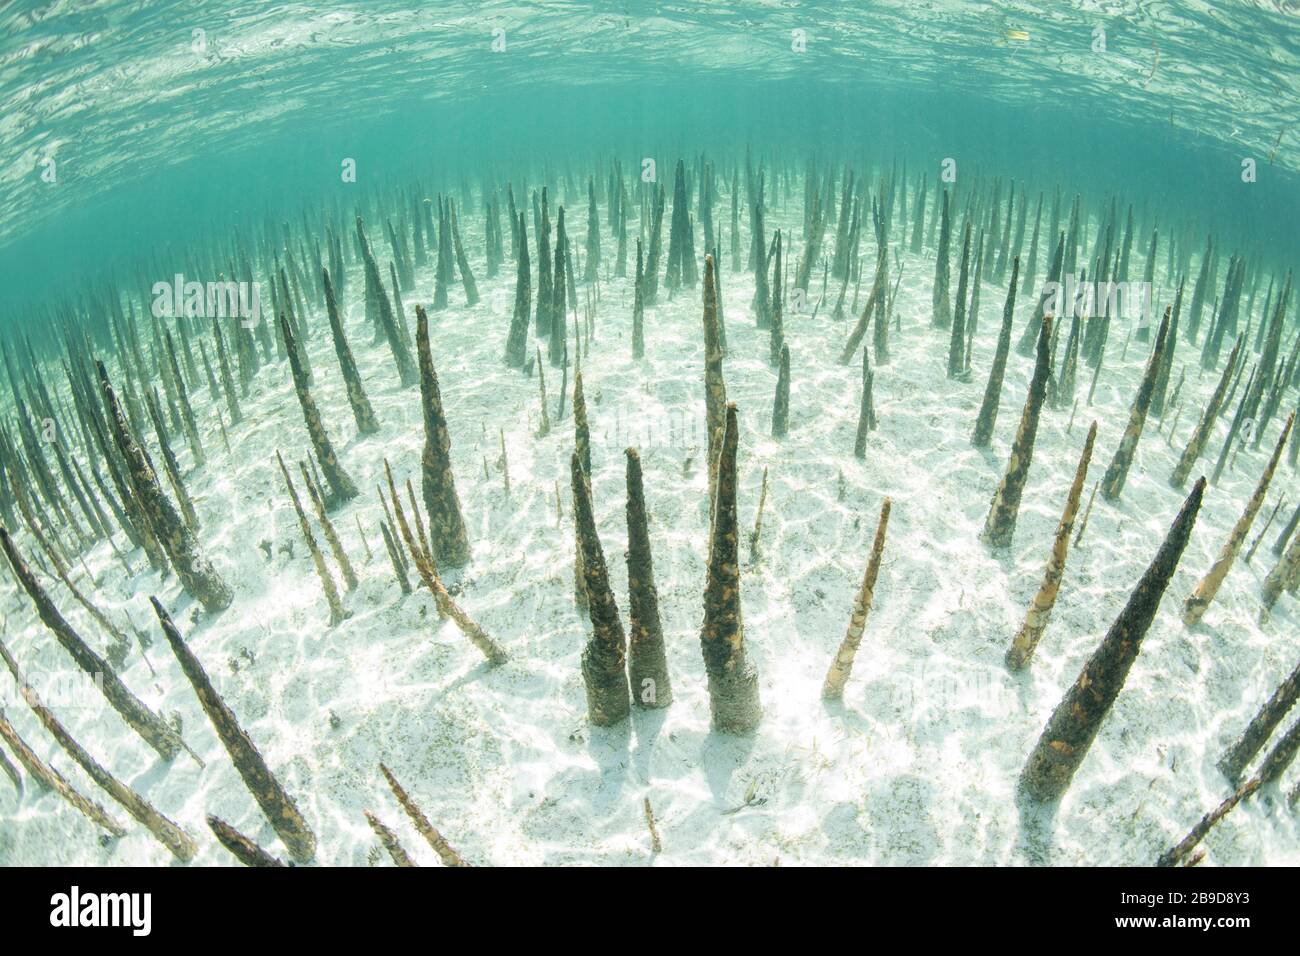 Le radici degli alberi neri di mangrovie, chiamati pneumatophores, sorgono dal fondo marino poco profondo. Foto Stock